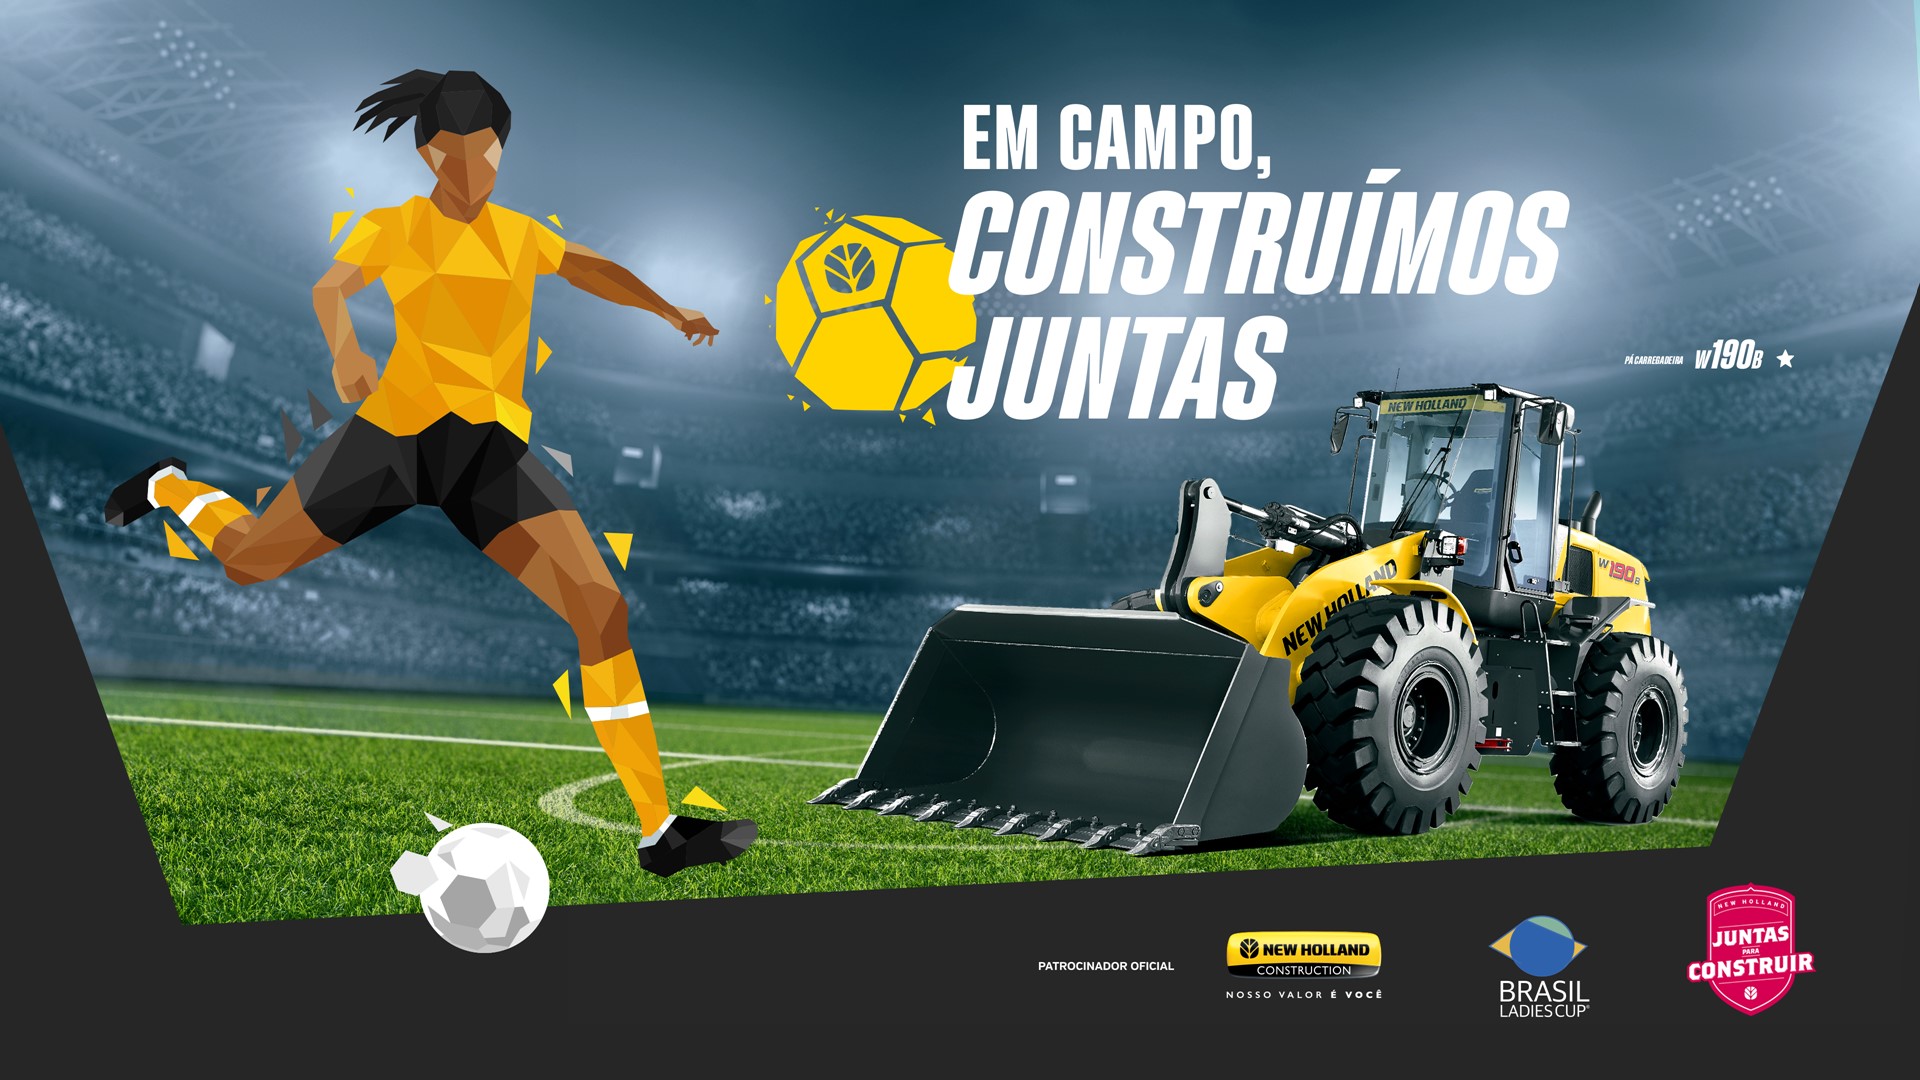 new-holland-construction-entra-em-campo-com-a-brasil-ladies-cup